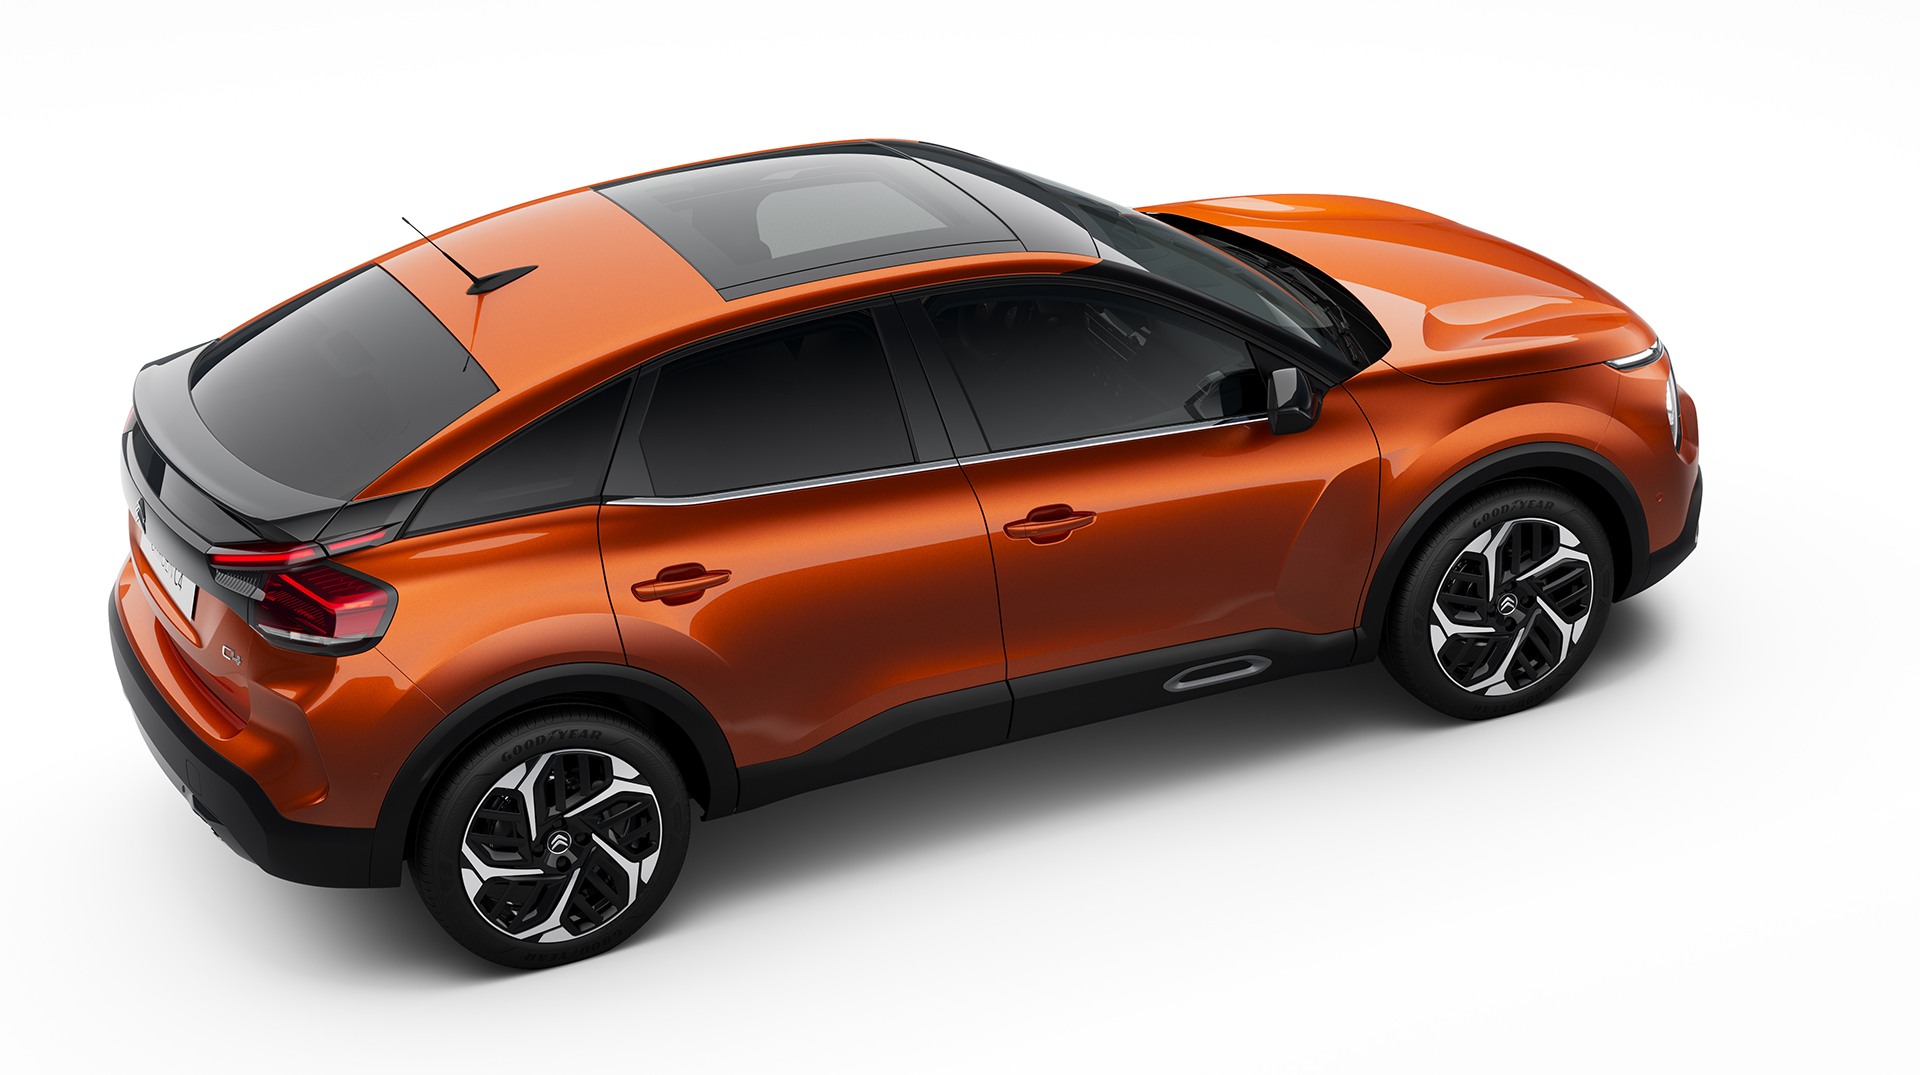 Citroën C4 bude mať štýl SUV kupé a aj elektrický pohon